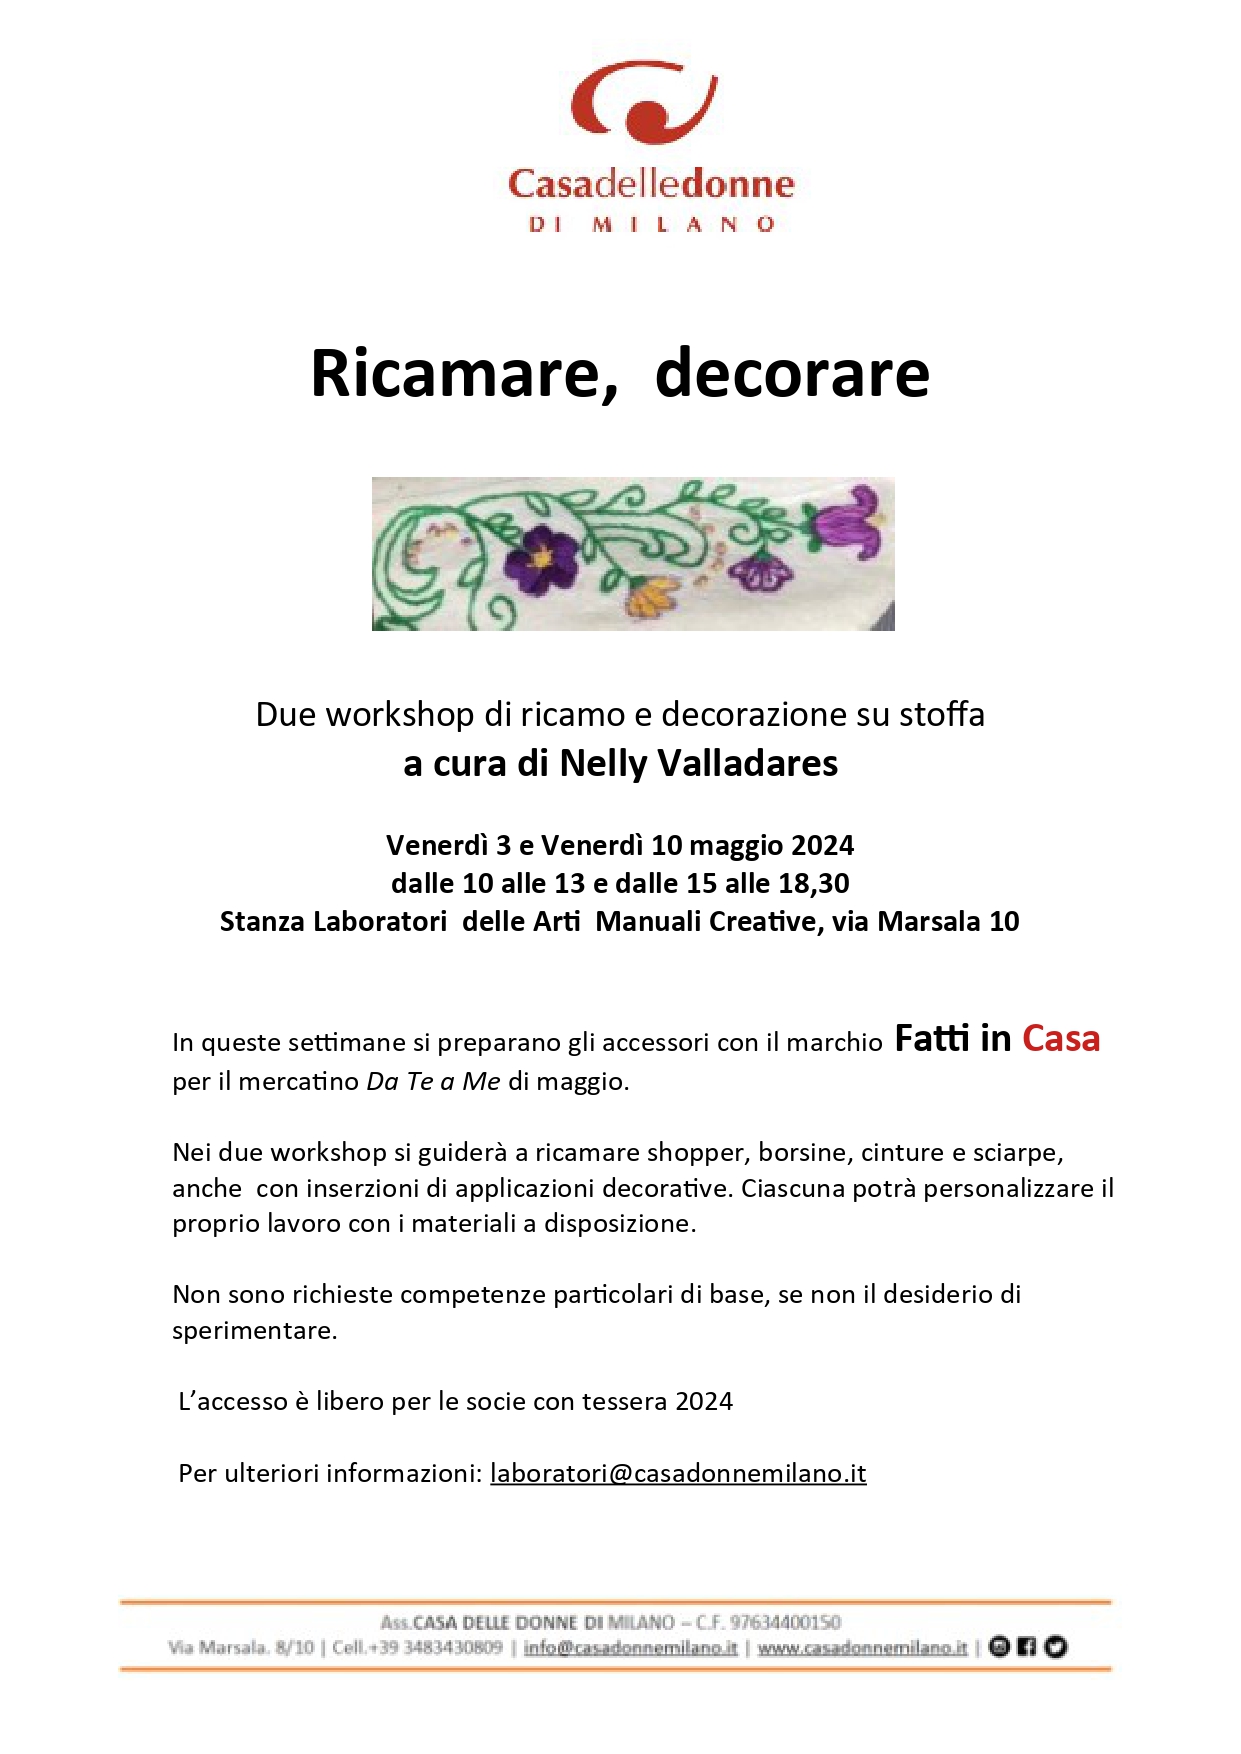 Workshop: Ricamare, decorare @ Casa delle Donne di Milano